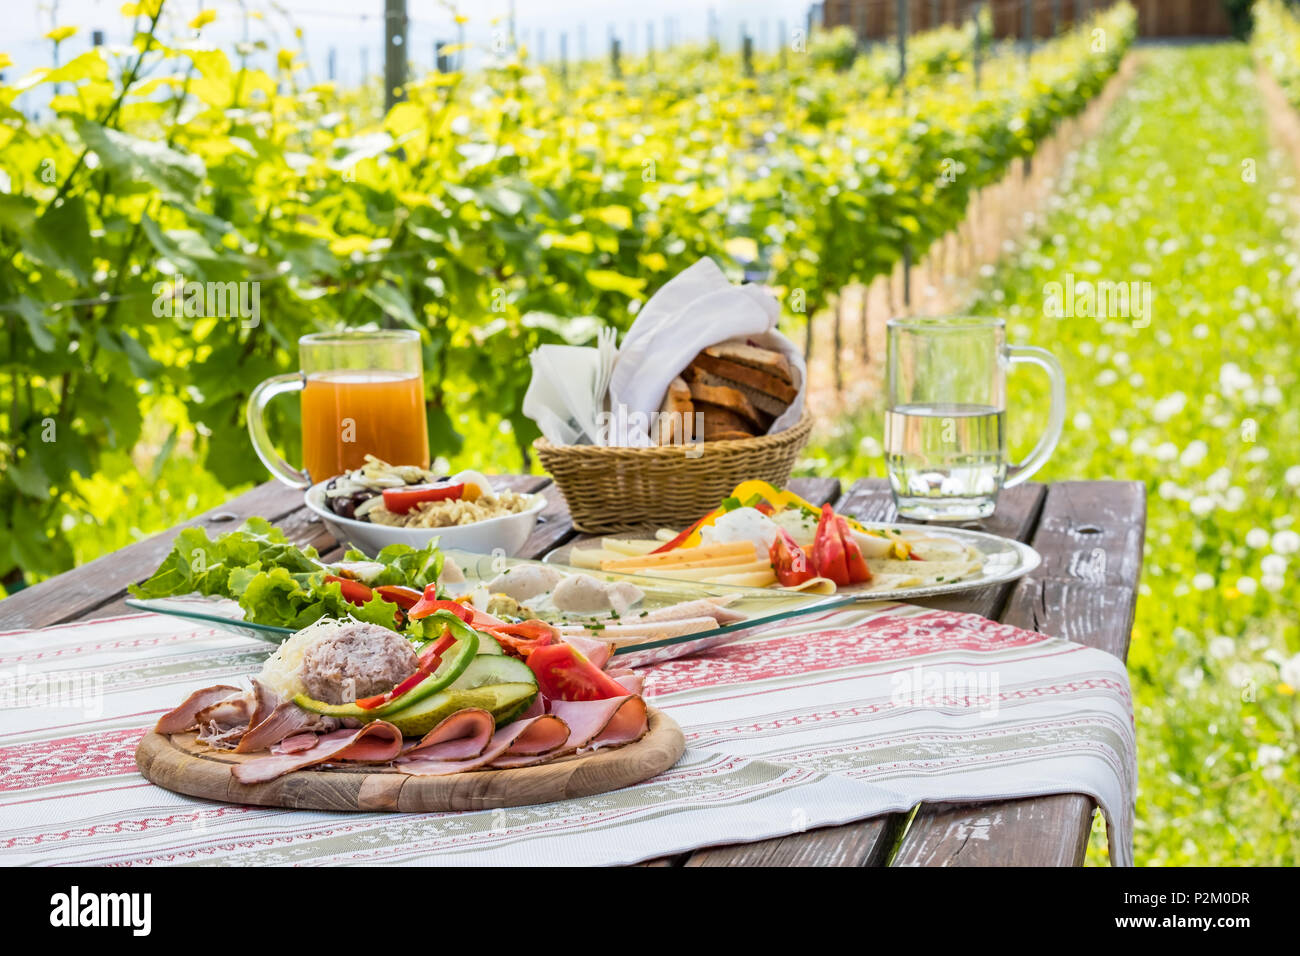 Brettljause, tradizionale piatto freddo con carne, formaggio, pesce, verdure, pane e bevande sul tavolo di legno in vigna con capanna in Stiria, Austria Foto Stock